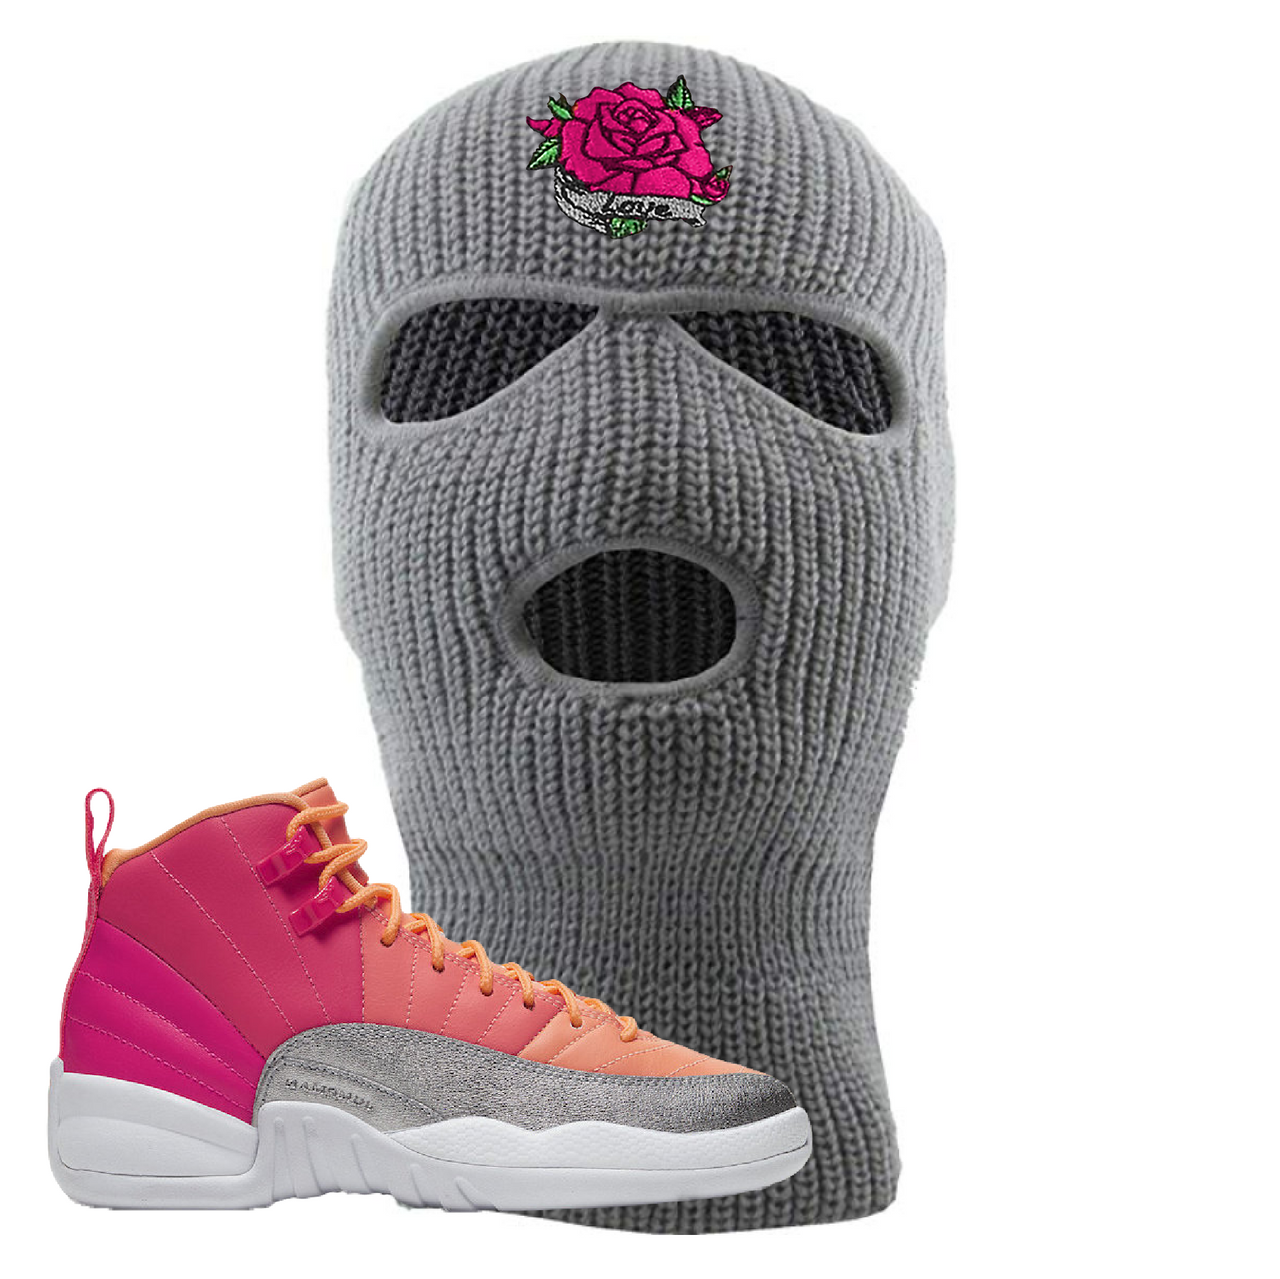 Jordan 12 GS Hot Punch Rose Love Light Gray Sneaker Hook Up Ski Mask